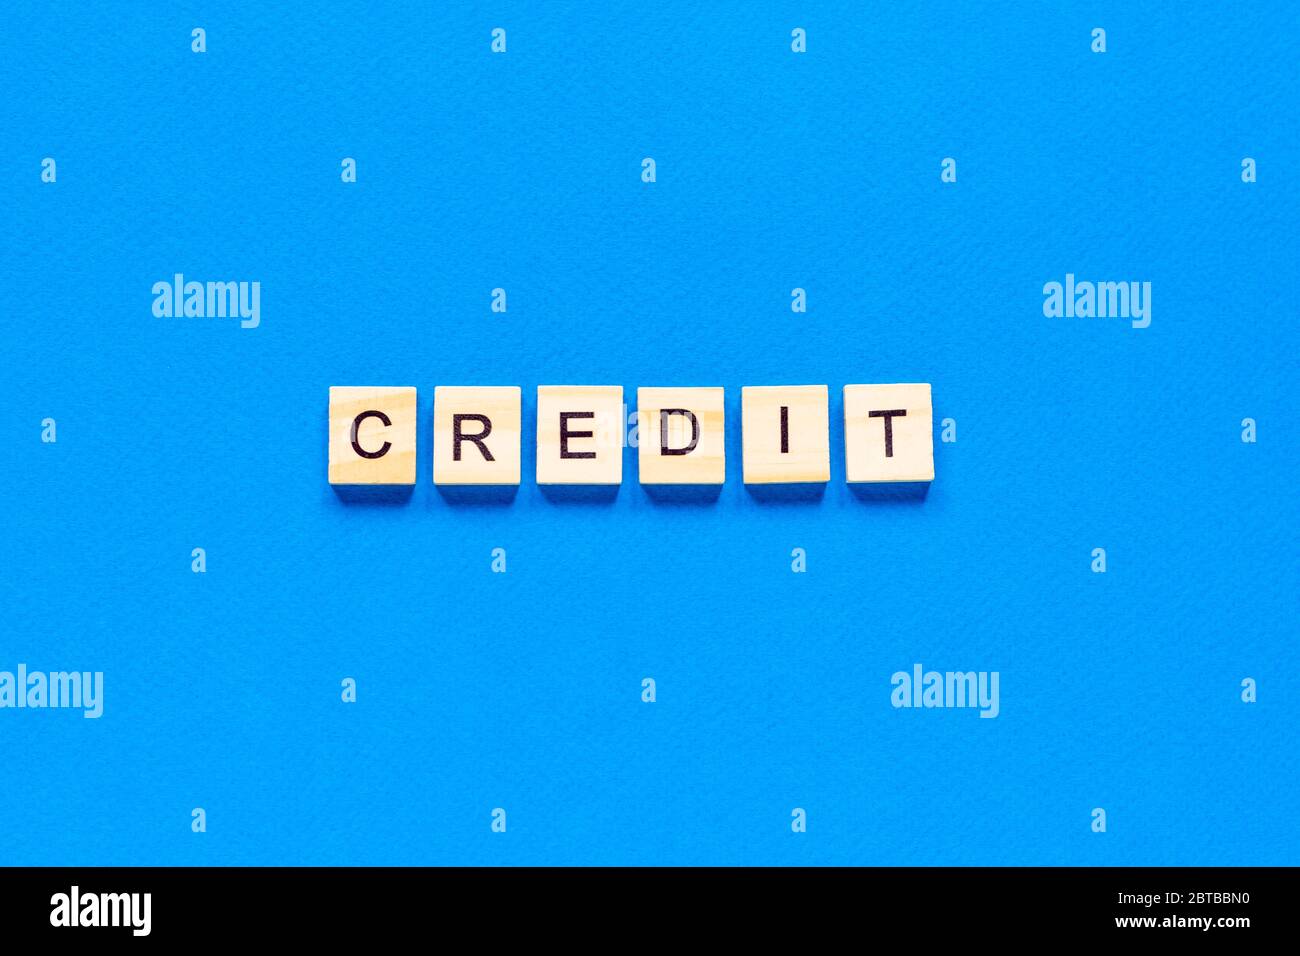 iscrizione di credito in lettere di legno su sfondo blu, disposizione piatta, vista dall'alto, classico colore blu Foto Stock